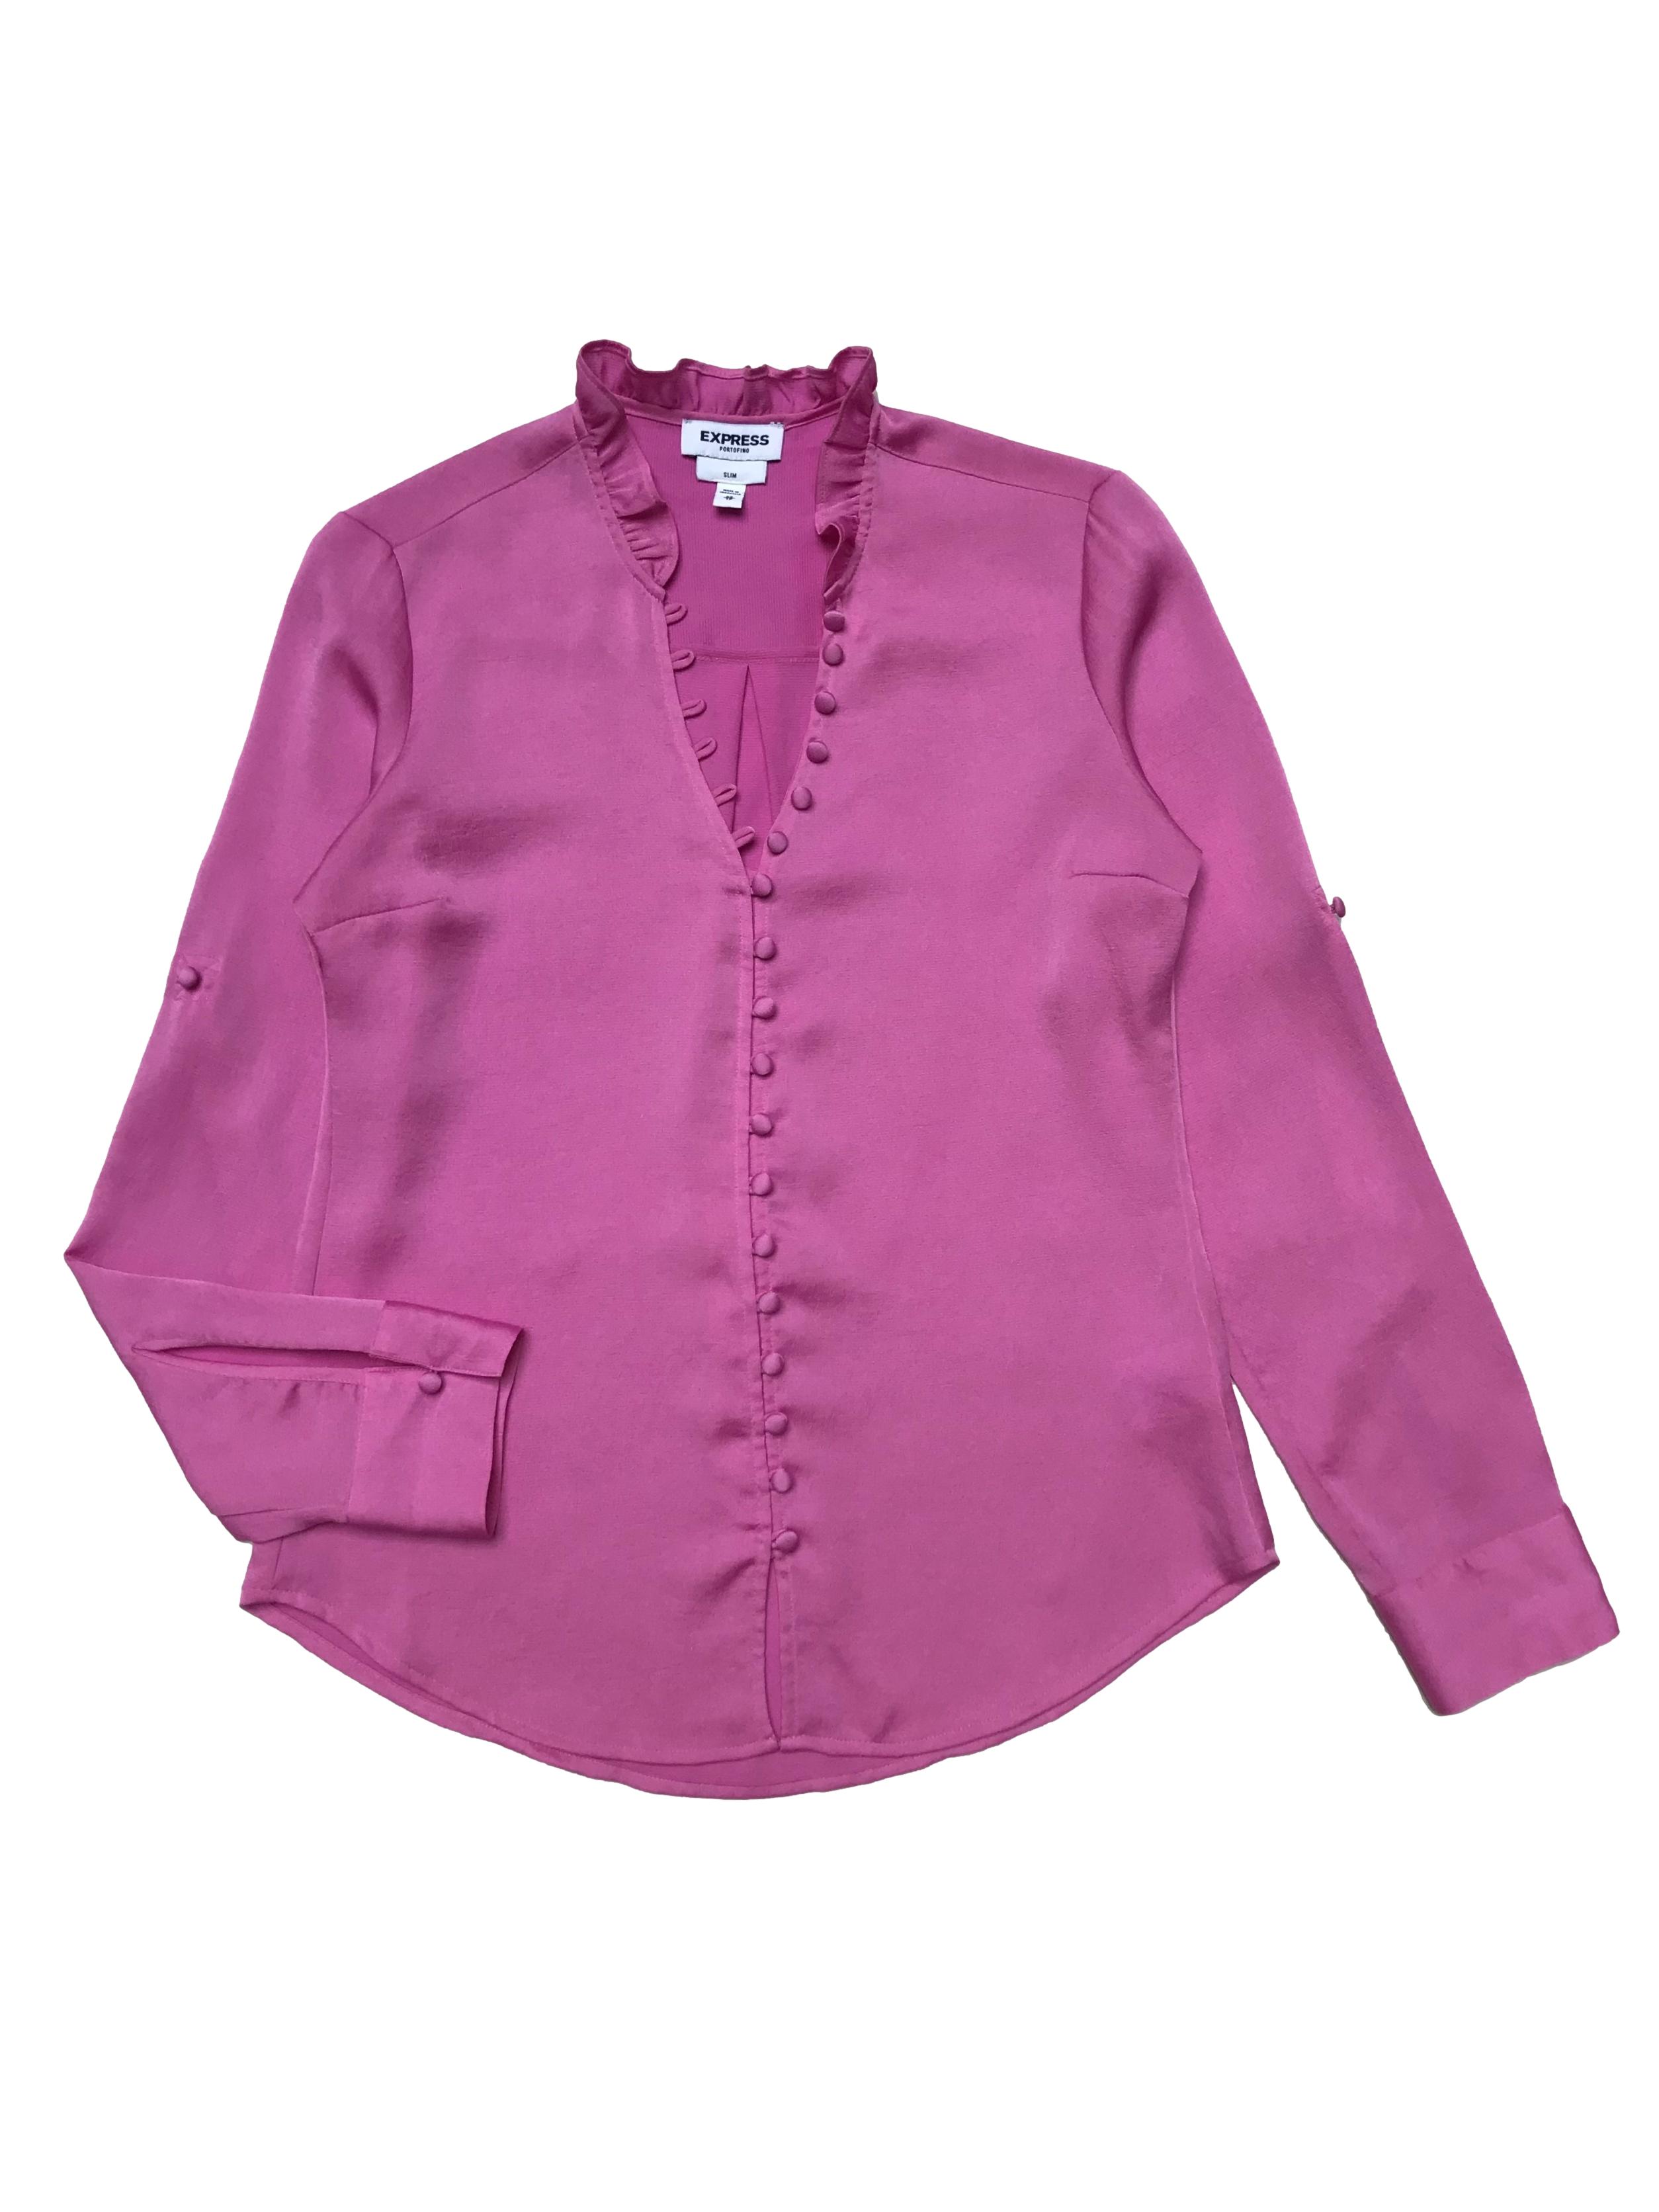 Blusa Express rosa chicle con fila de botones forrados y bobo en el cuello, mangas regulables con botón, es suelta. Busto 96cm Largo 60cm